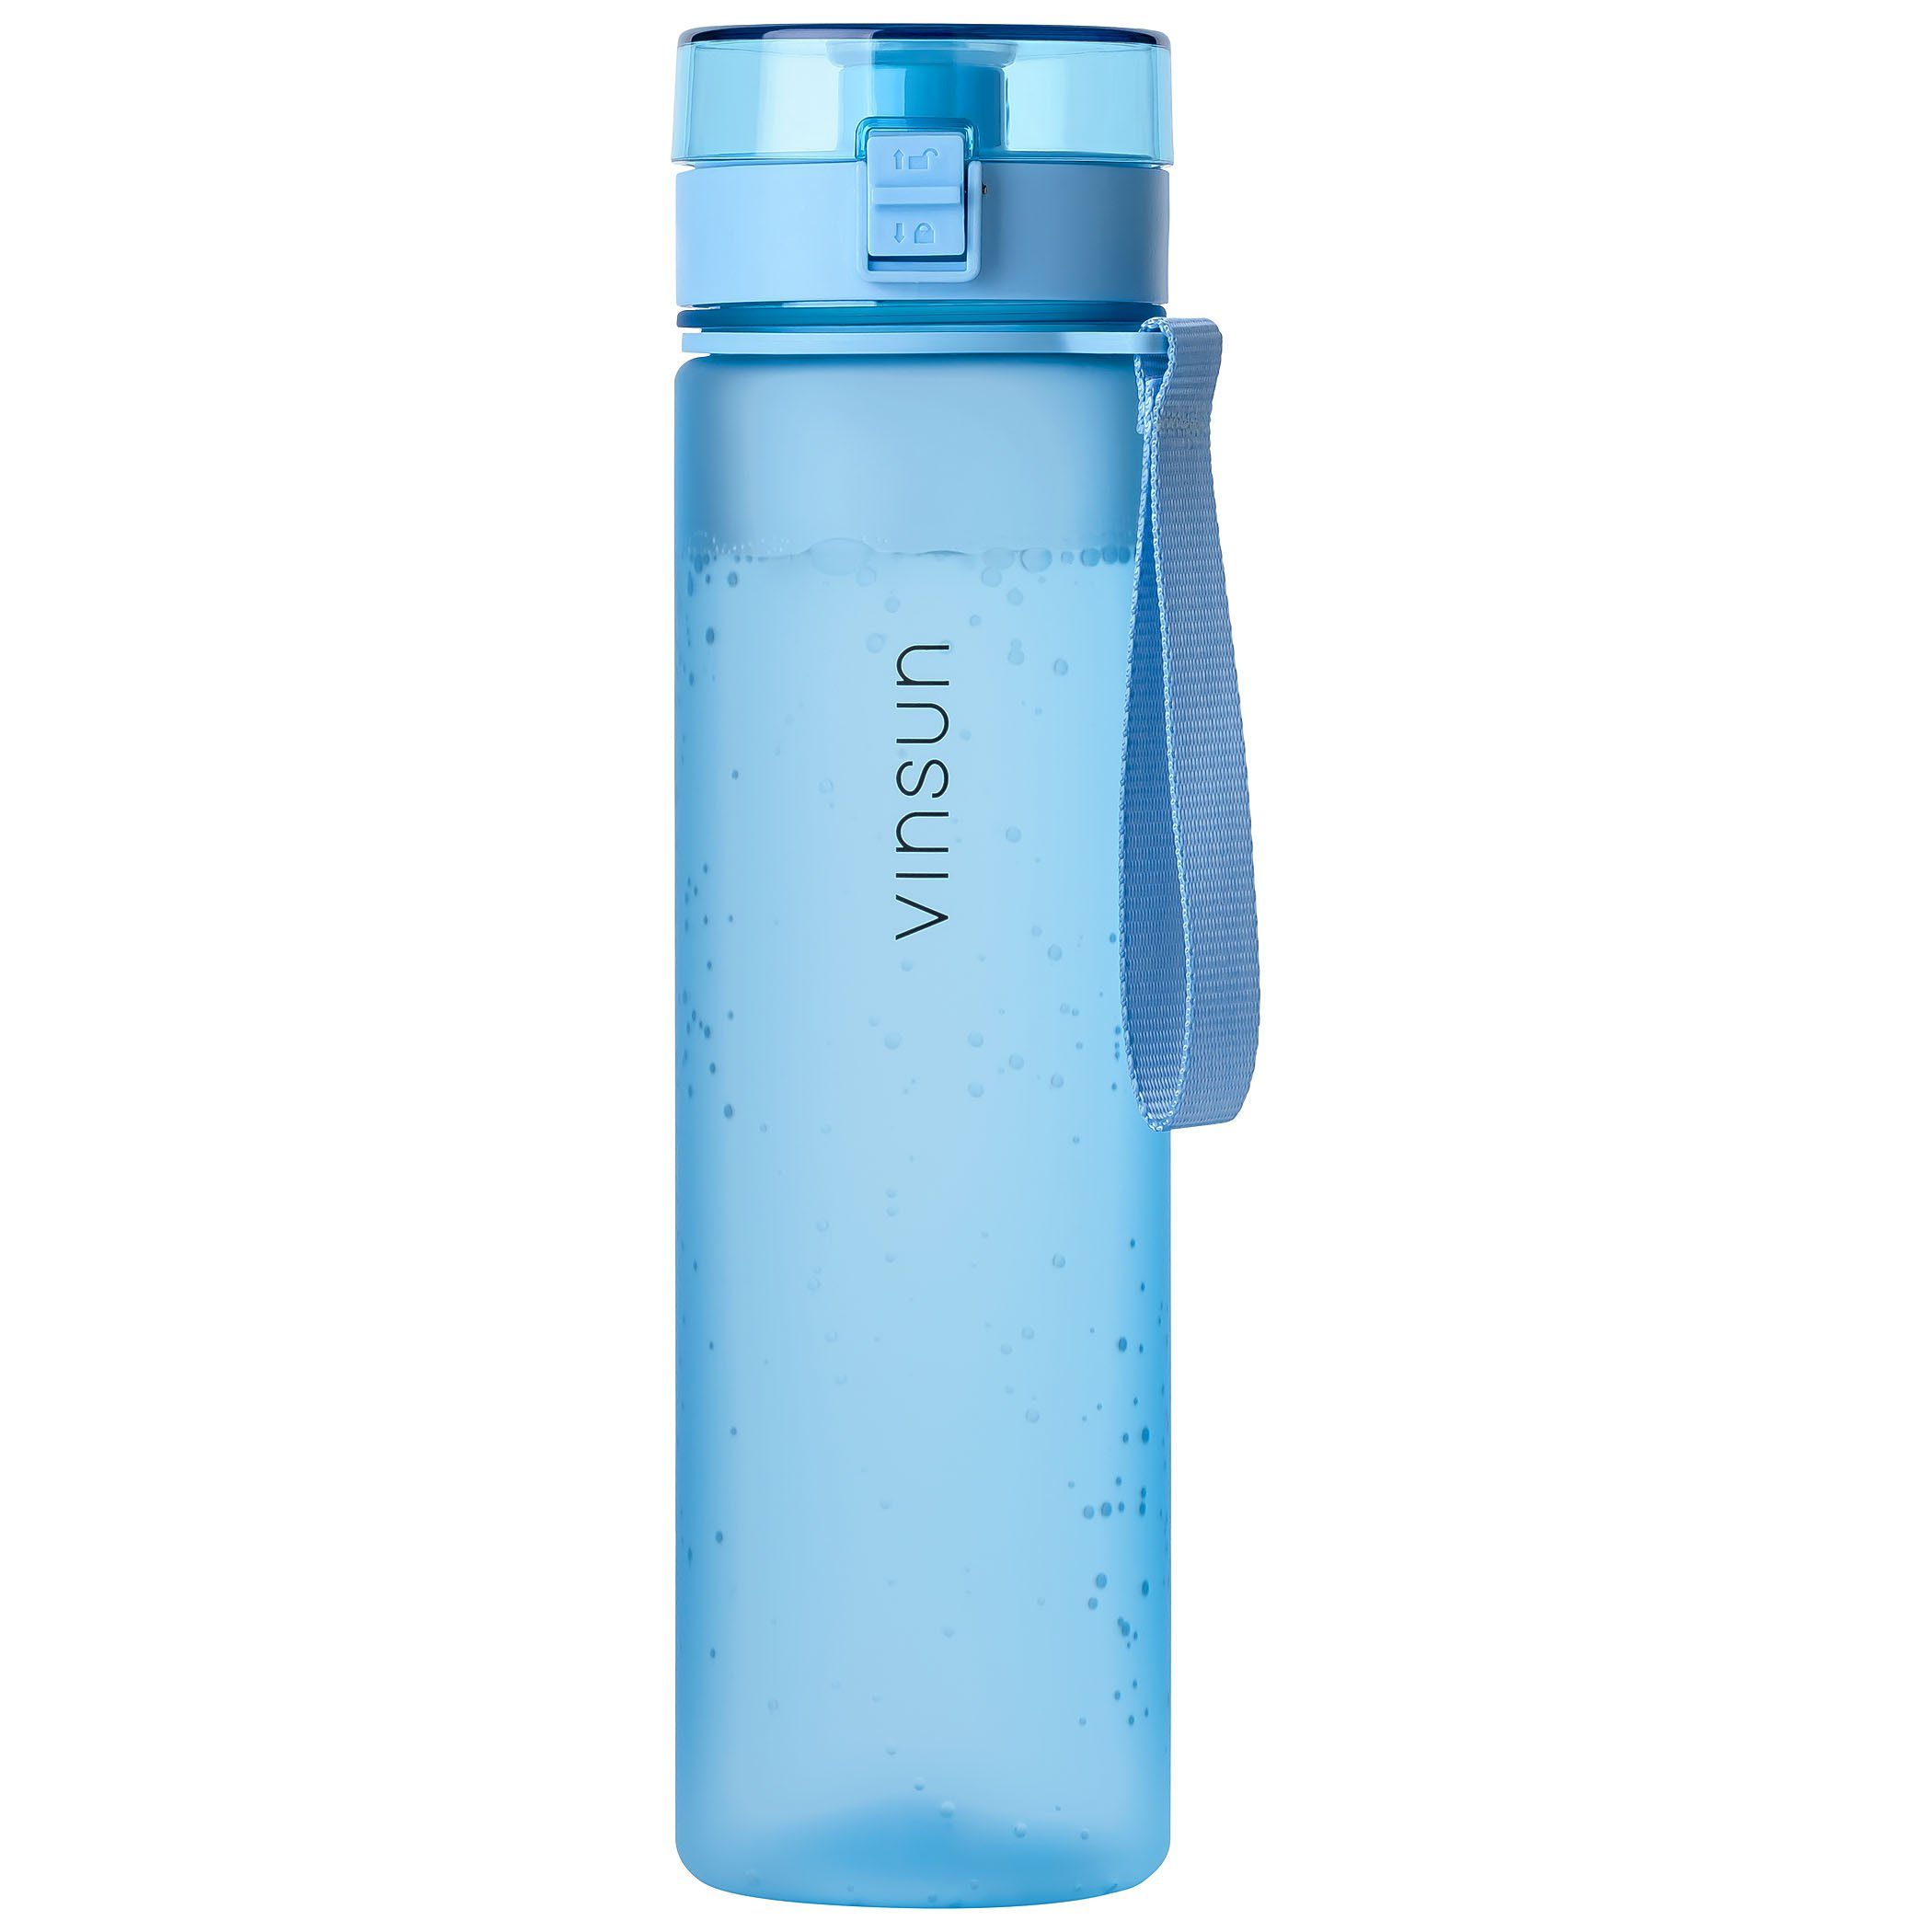 Vinsun Trinkflasche Trinkflasche 1L, Kohlensäure geeignet, auslaufsicher - Hell Blau, BPA frei, Geruchs- und Geschmacksneutral, Kohlensäure, auslaufsicher